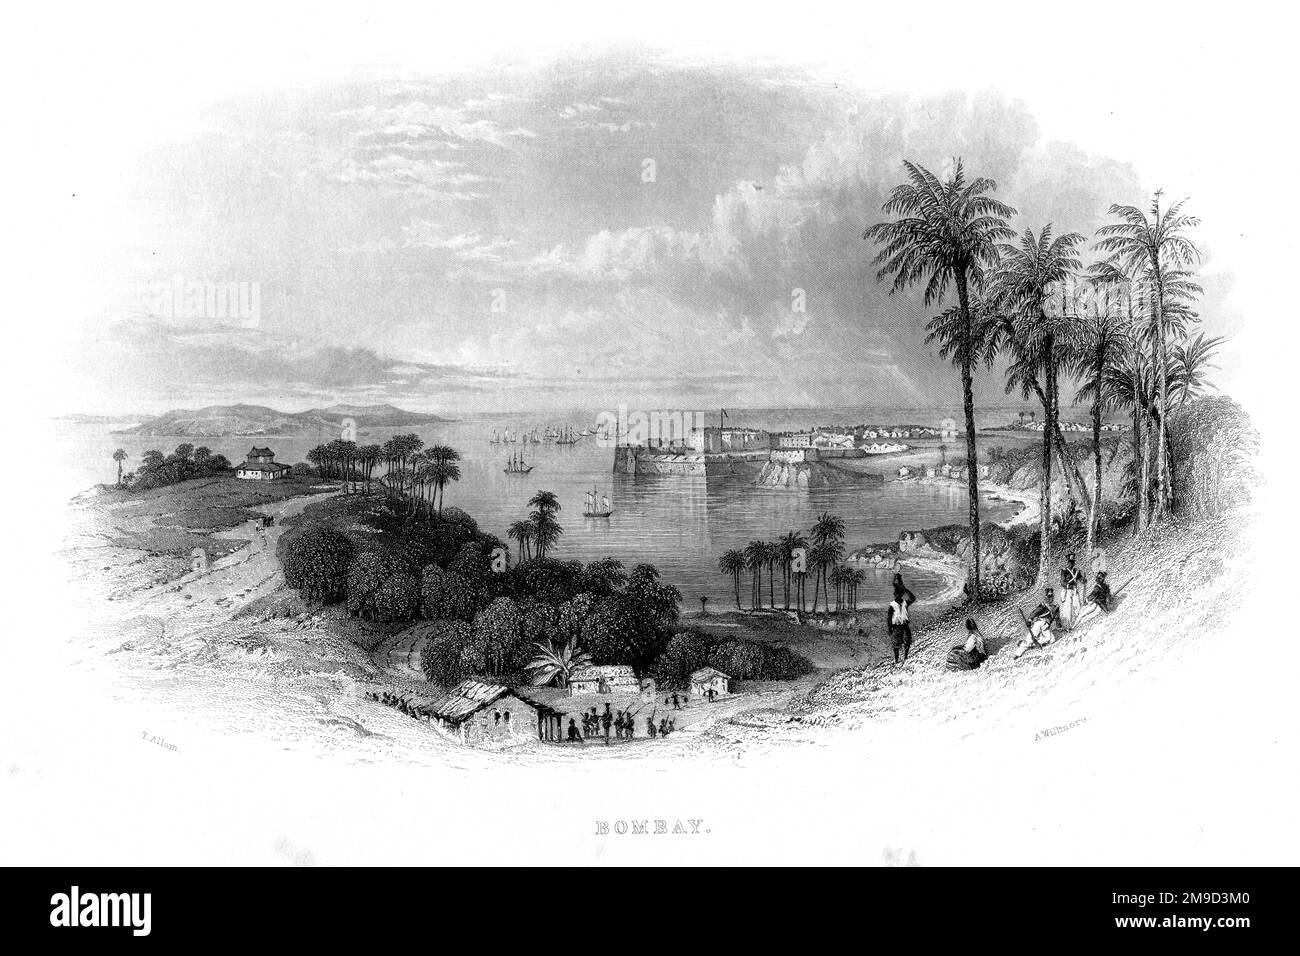 Bombay (Mumbai), metà del 19th ° secolo. Faceva parte della dote portoghese di Caterina di Braganza quando sposò Carlo II nel 1661. Oggi, è il principale porto e centro commerciale dell'India. Foto Stock